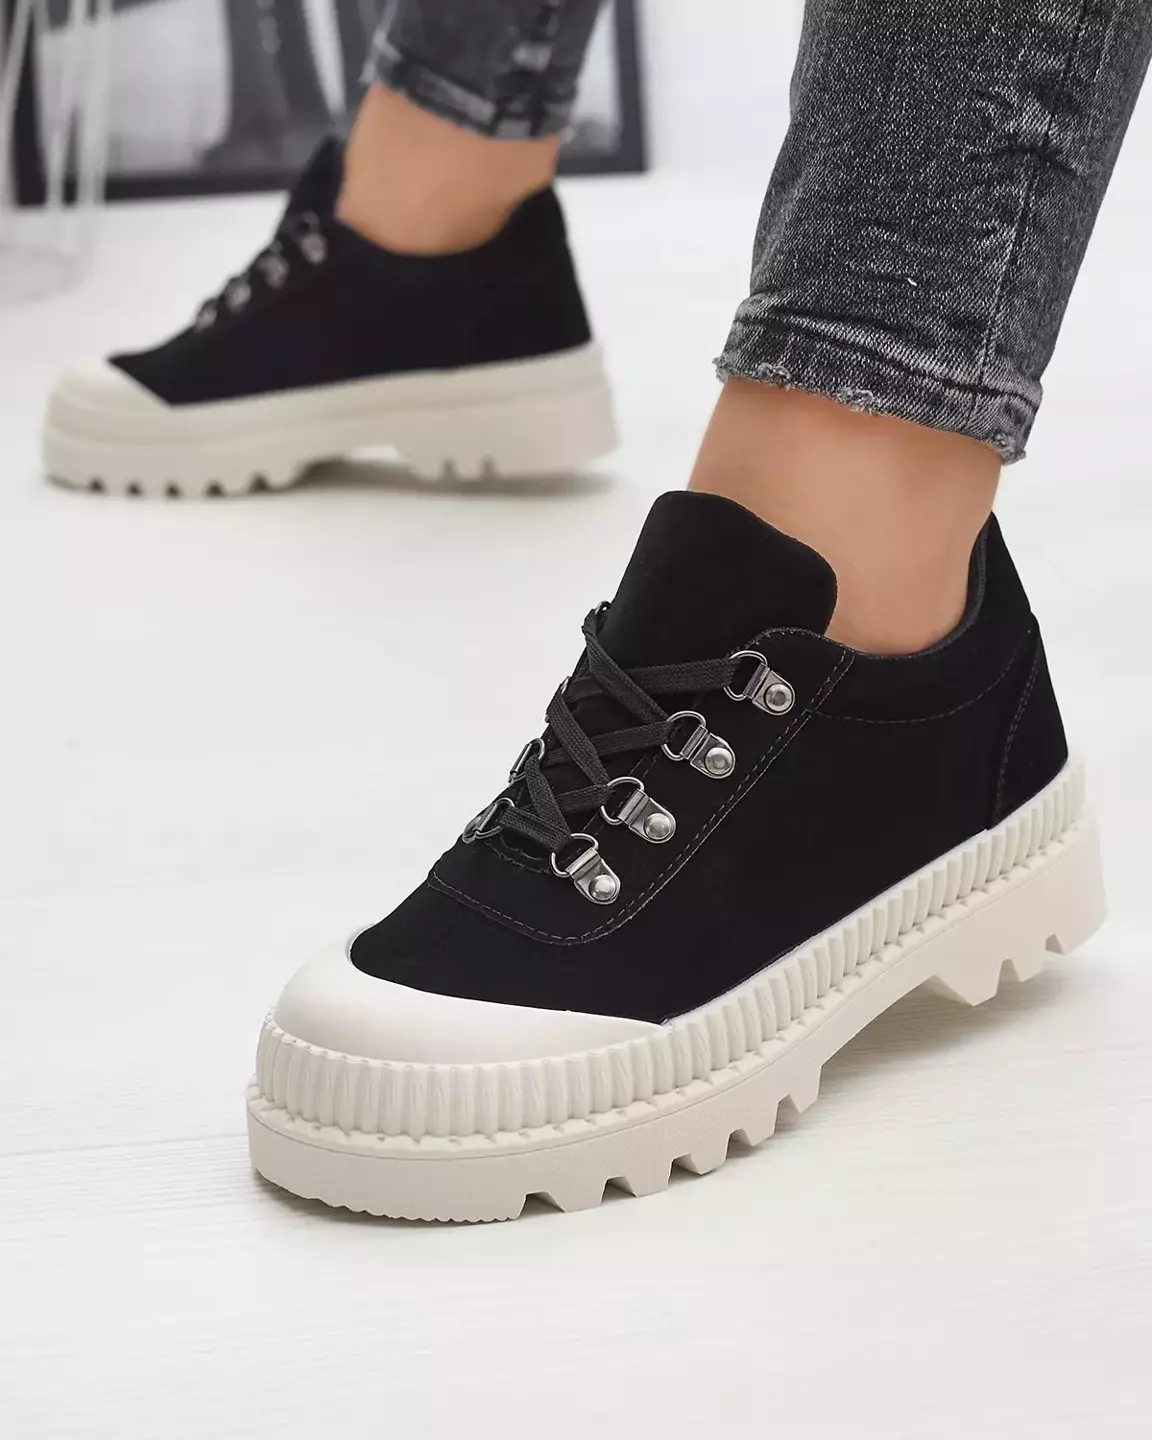 Schwarze Damen Sportschuhe wie Ohos Sneakers - Schuhe